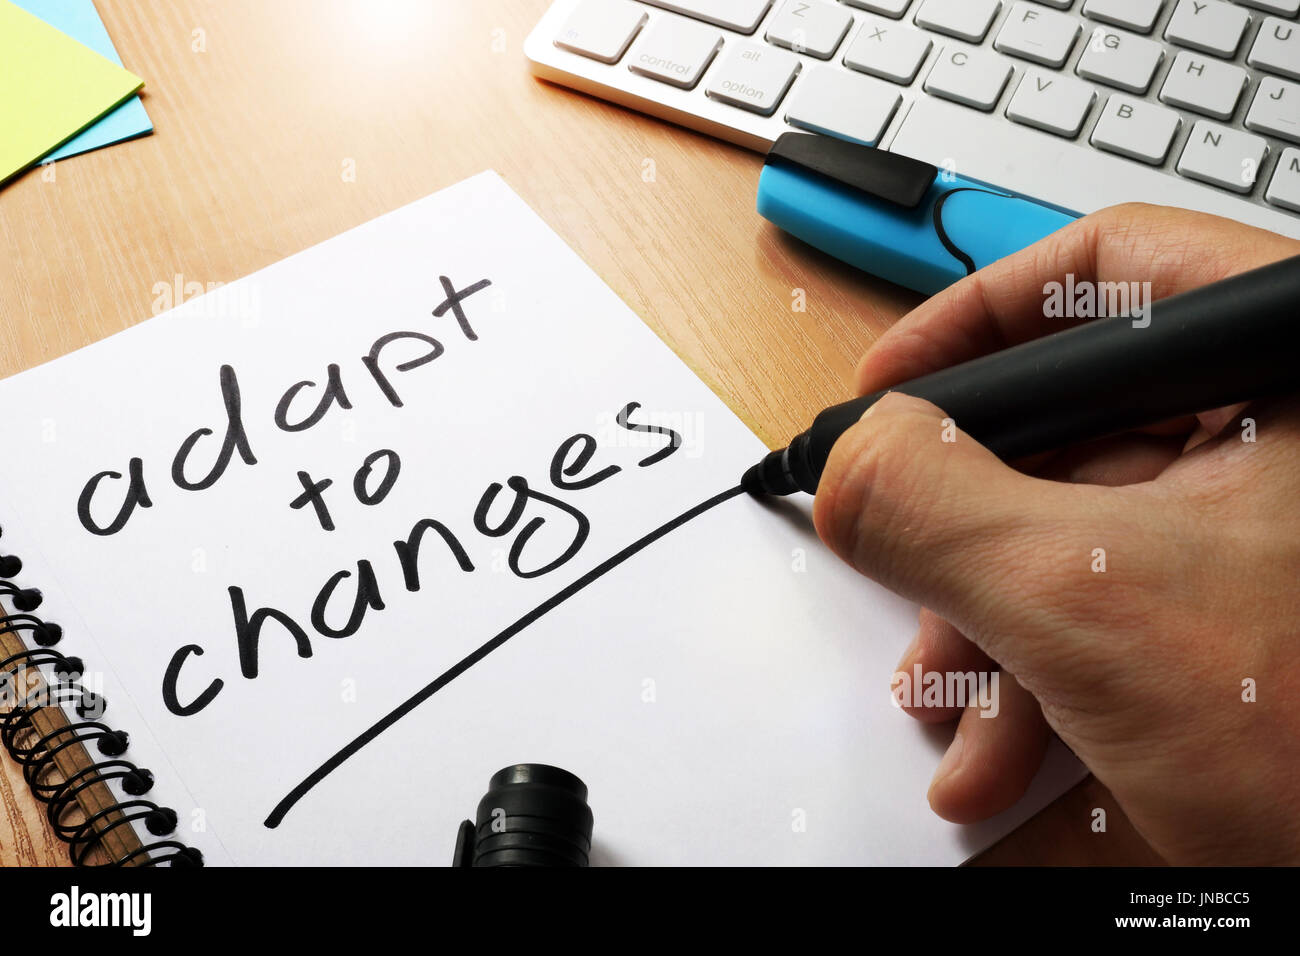 Adaptarse a los cambios en una nota escrita. Foto de stock